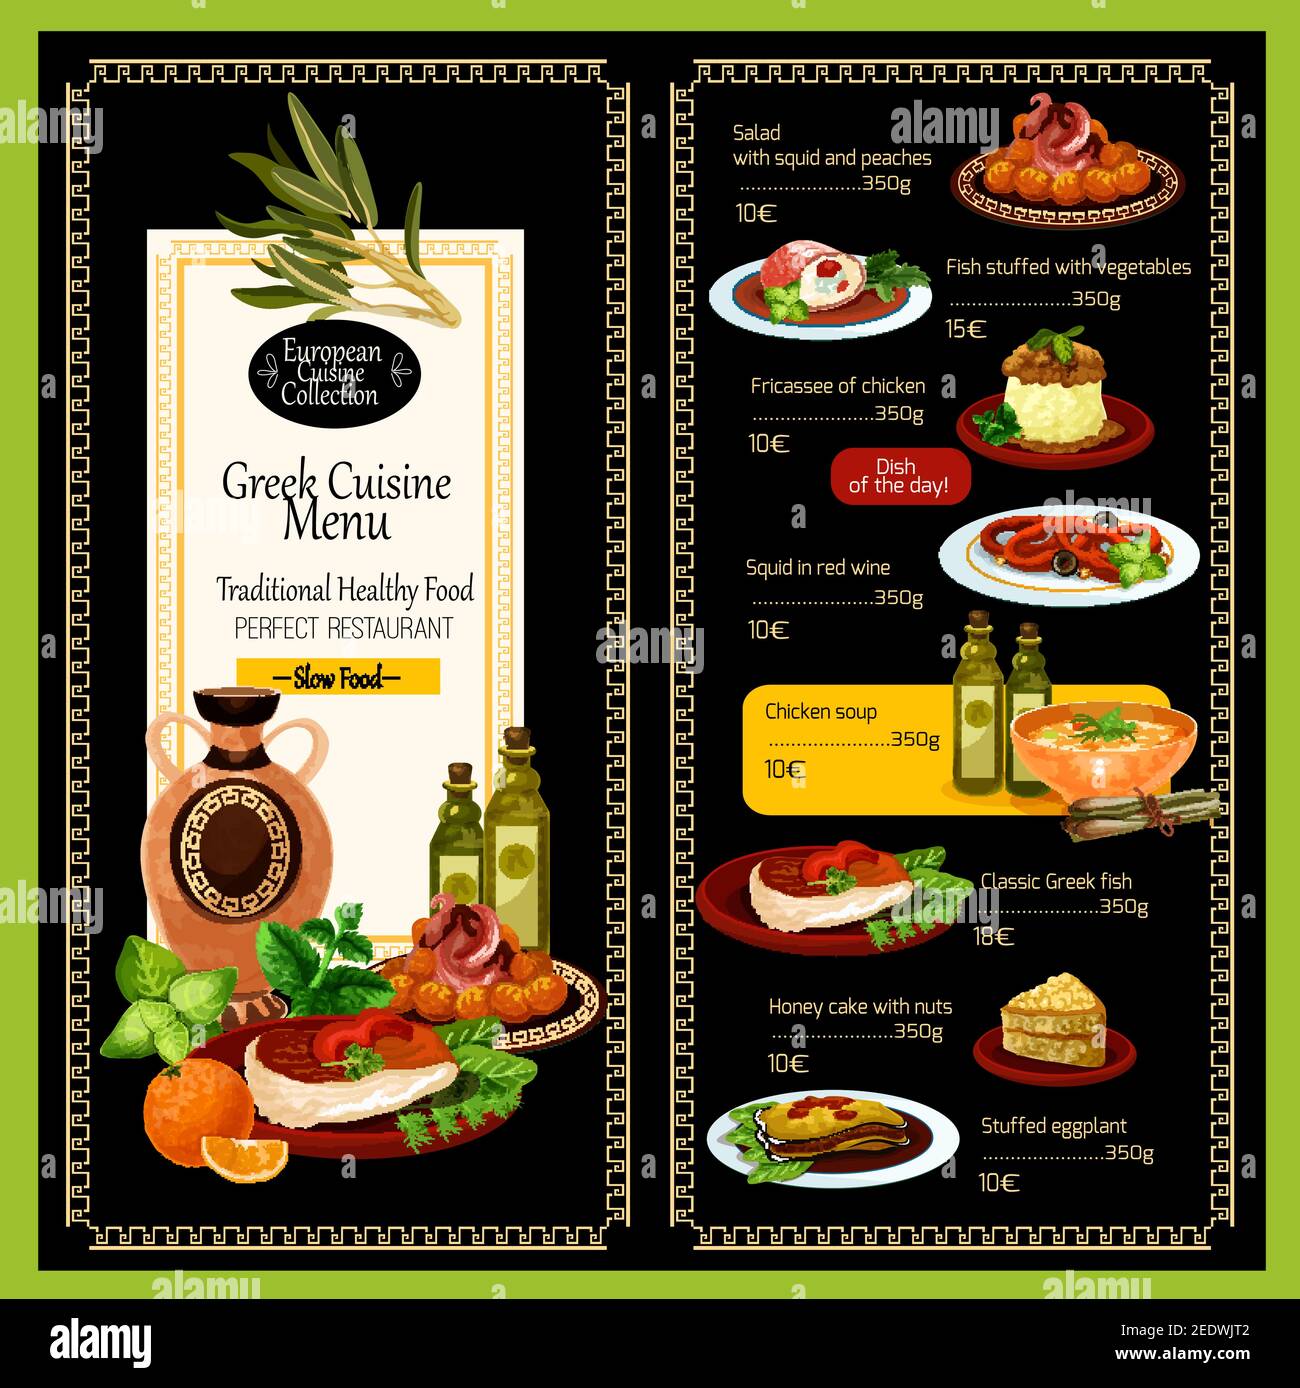 Griechische Küche Menüvorlage für Restaurant. Traditionelle griechische mediterrane Gerichte von Fleisch Essen Grill Gyros, Olivenöl Gemüse Salate oder Fisch s Stock Vektor